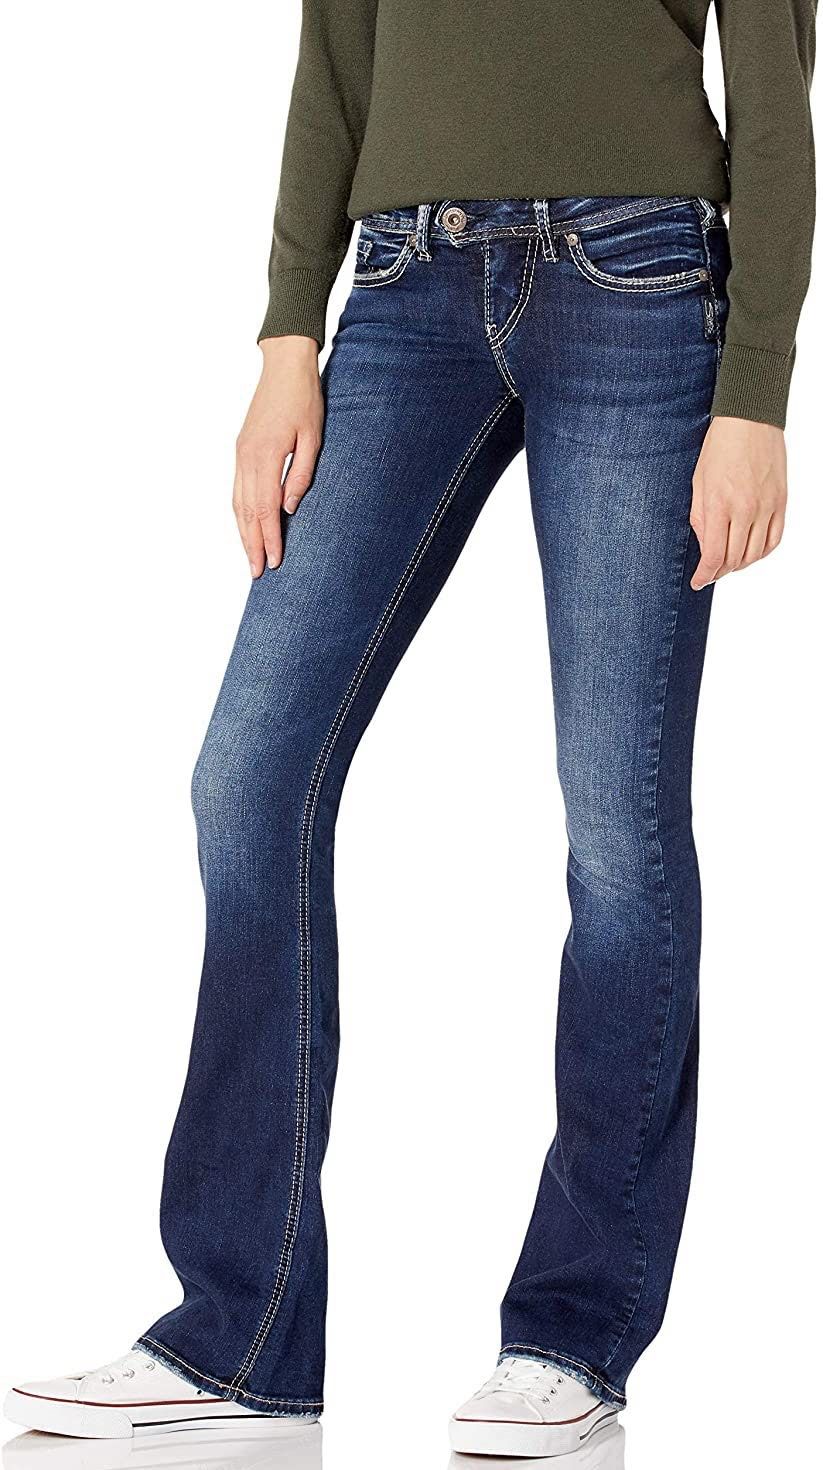 Les 8 meilleurs jeans taille basse sur Amazon